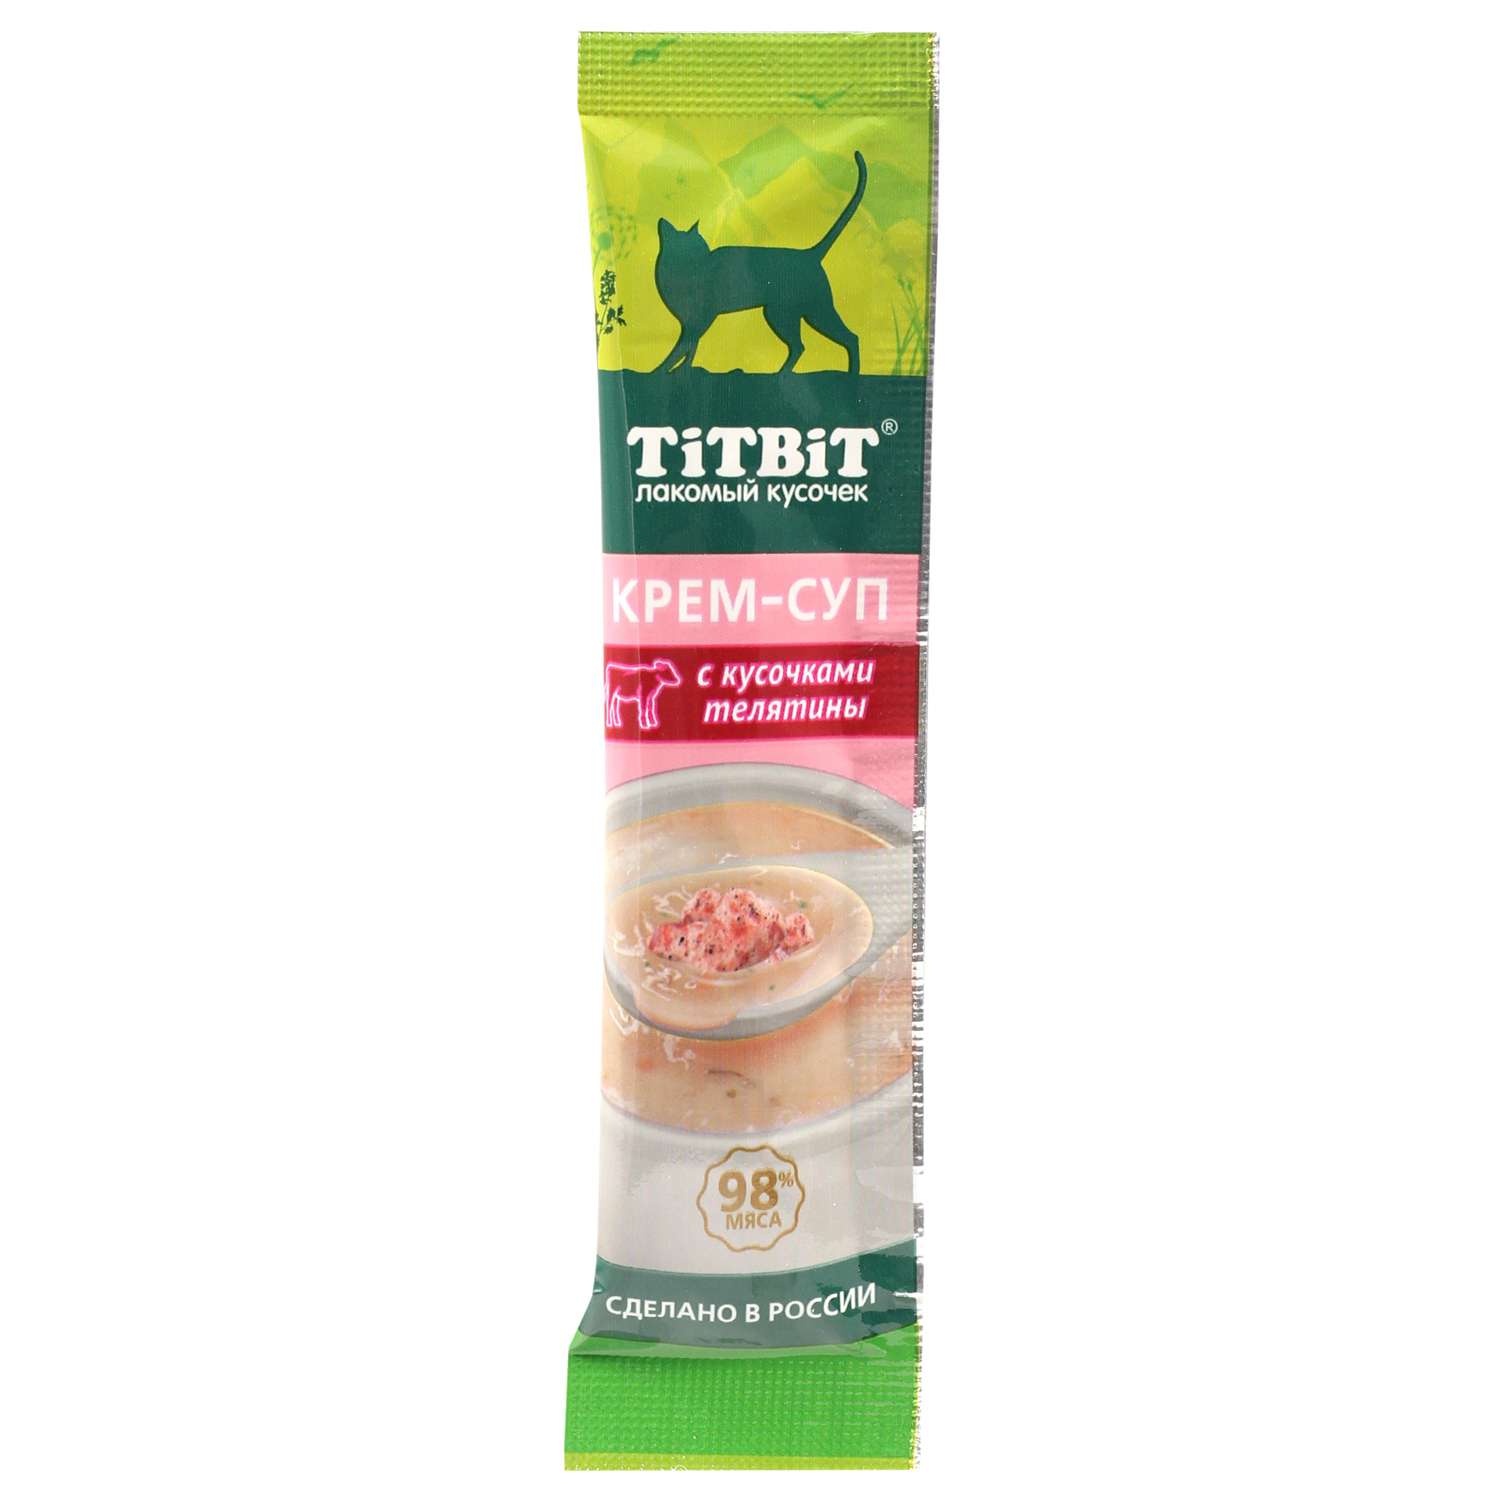 Лакомство для кошек Titbit 10г с кусочками телятины крем-суп - фото 1